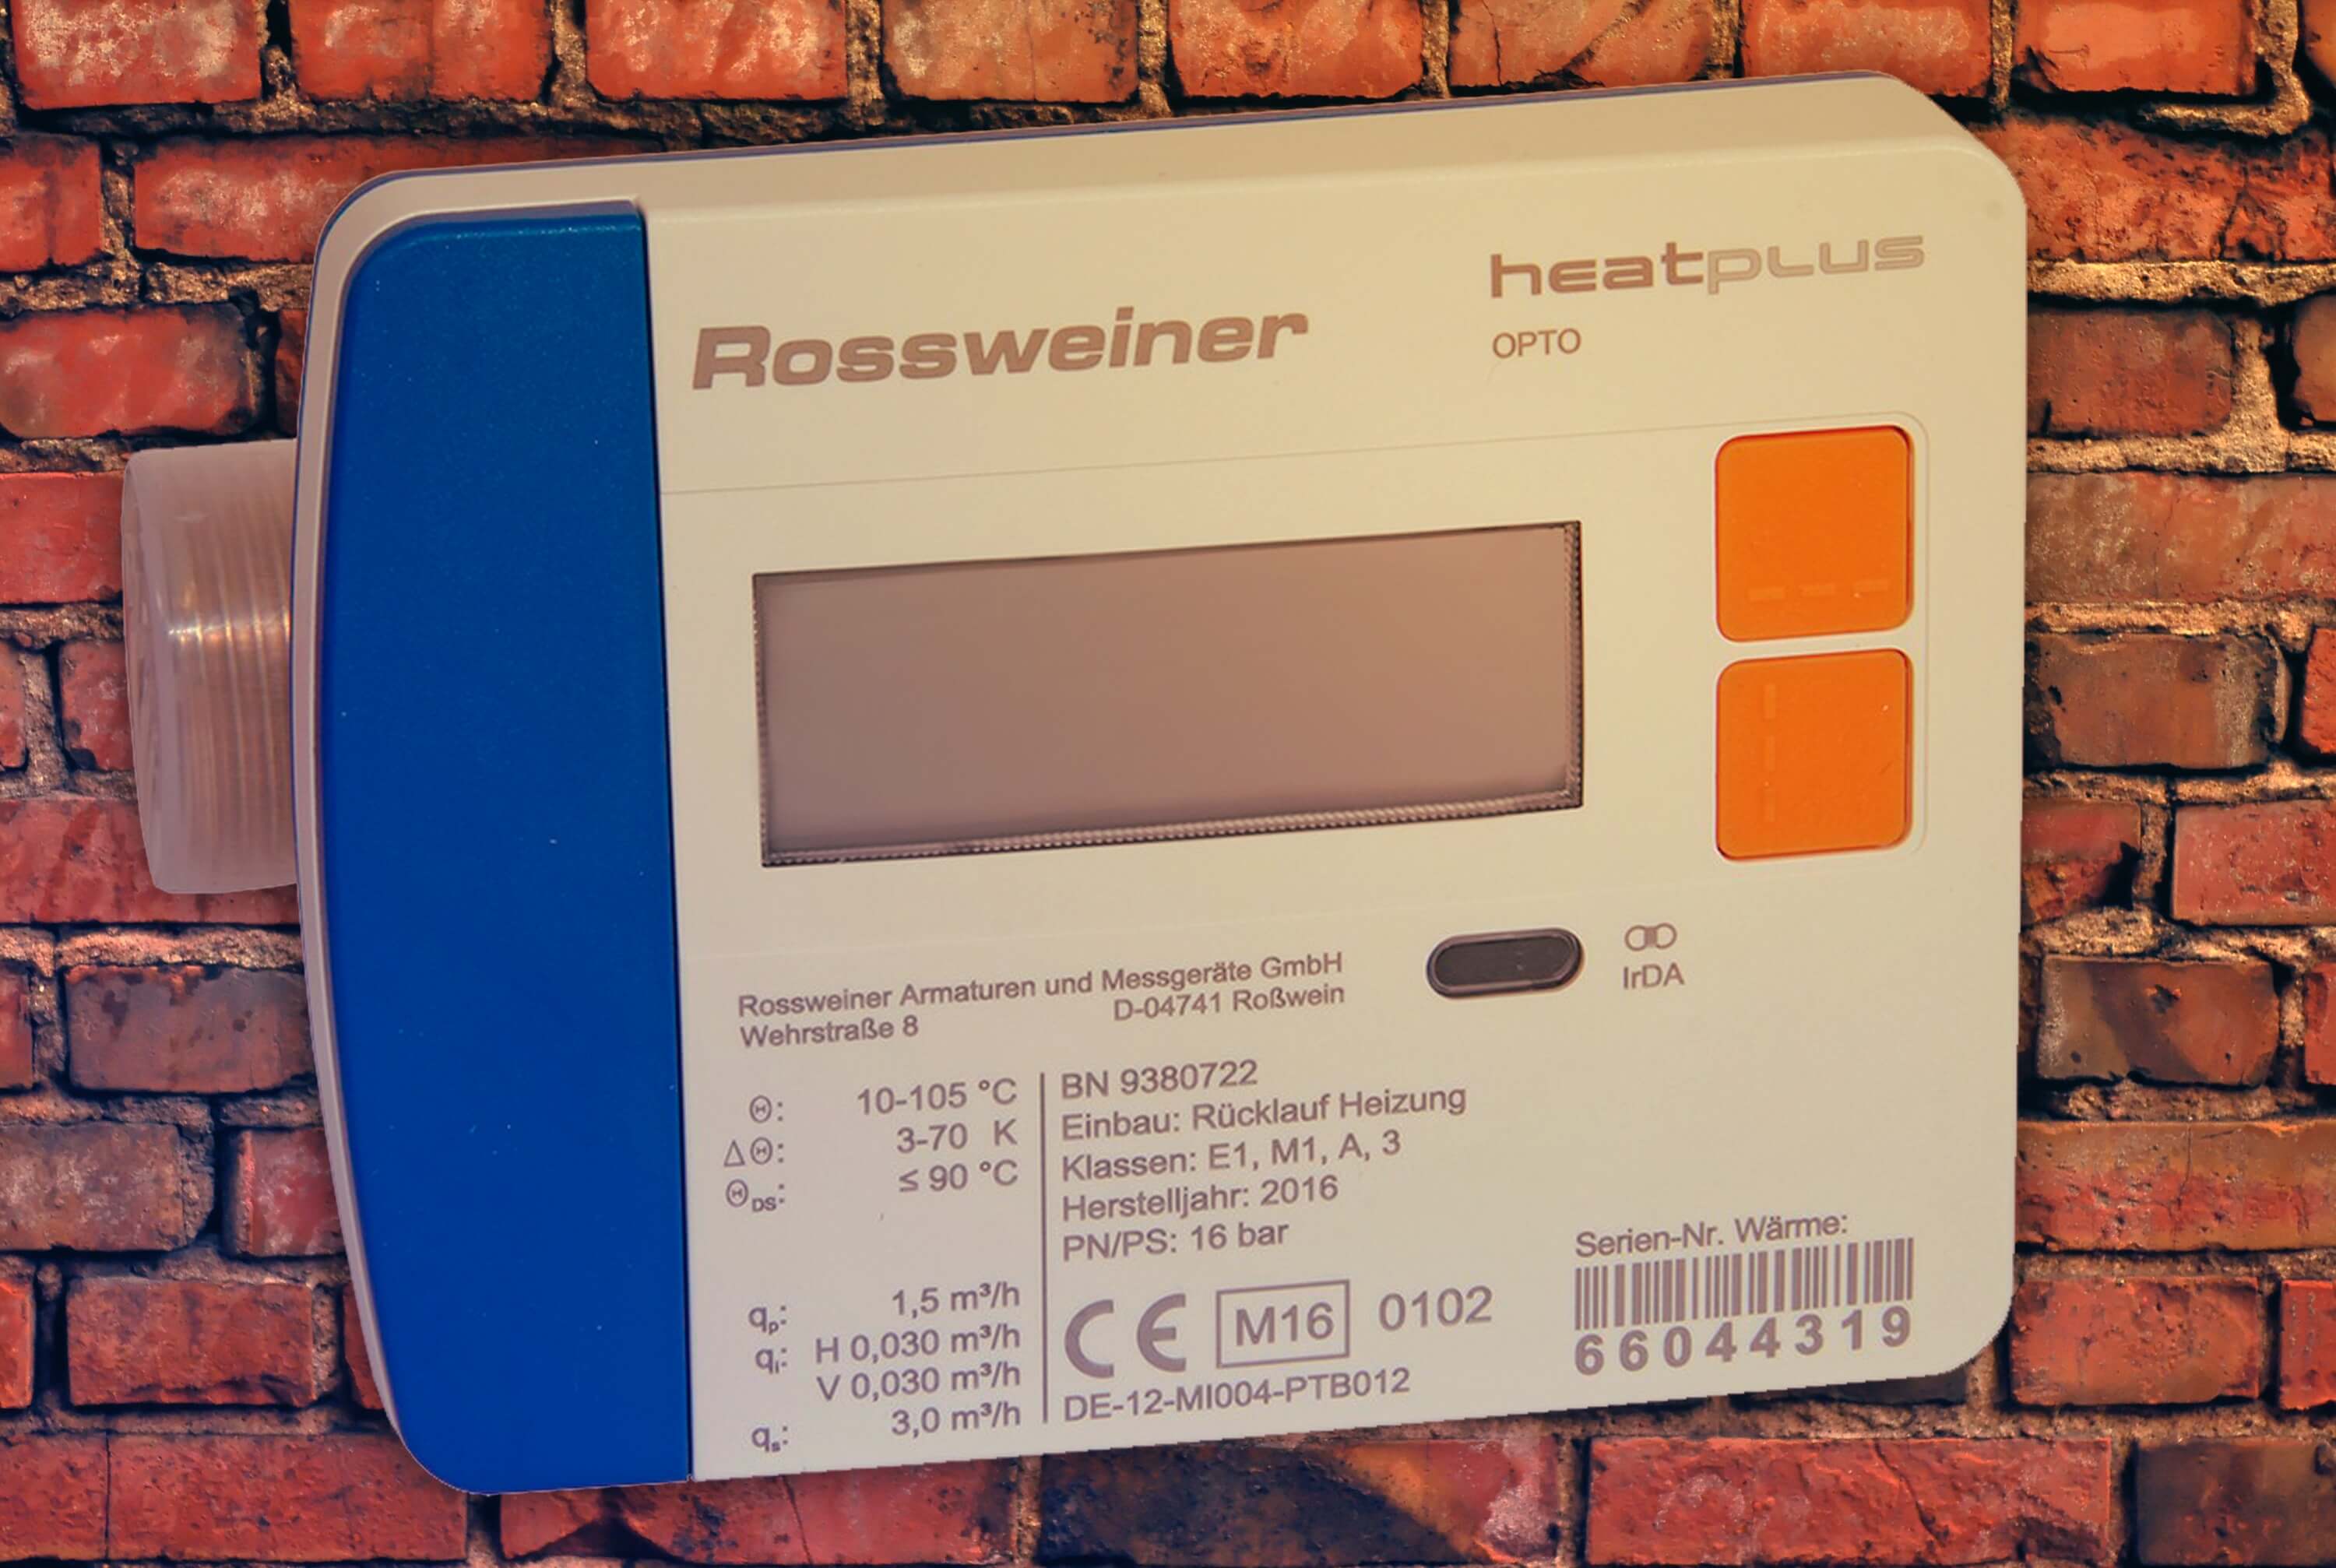 Rossweiner Heat Plus, Удобный и экономный измеритель тепла, зручний і економічний вимірювач тепла, Т-Облік, Т-Облик, Блог